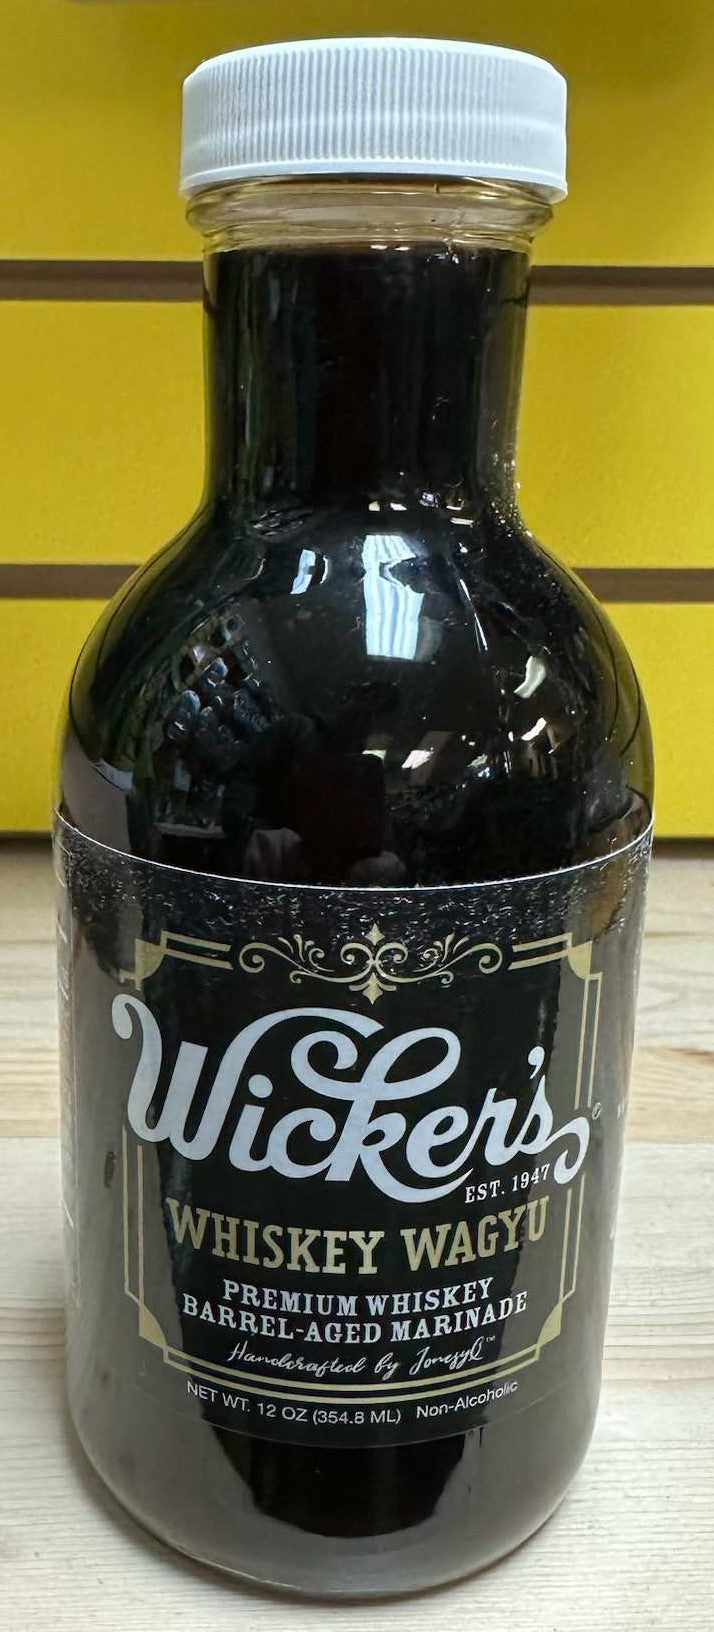 Wicker's Whiskey Wagyu 12oz